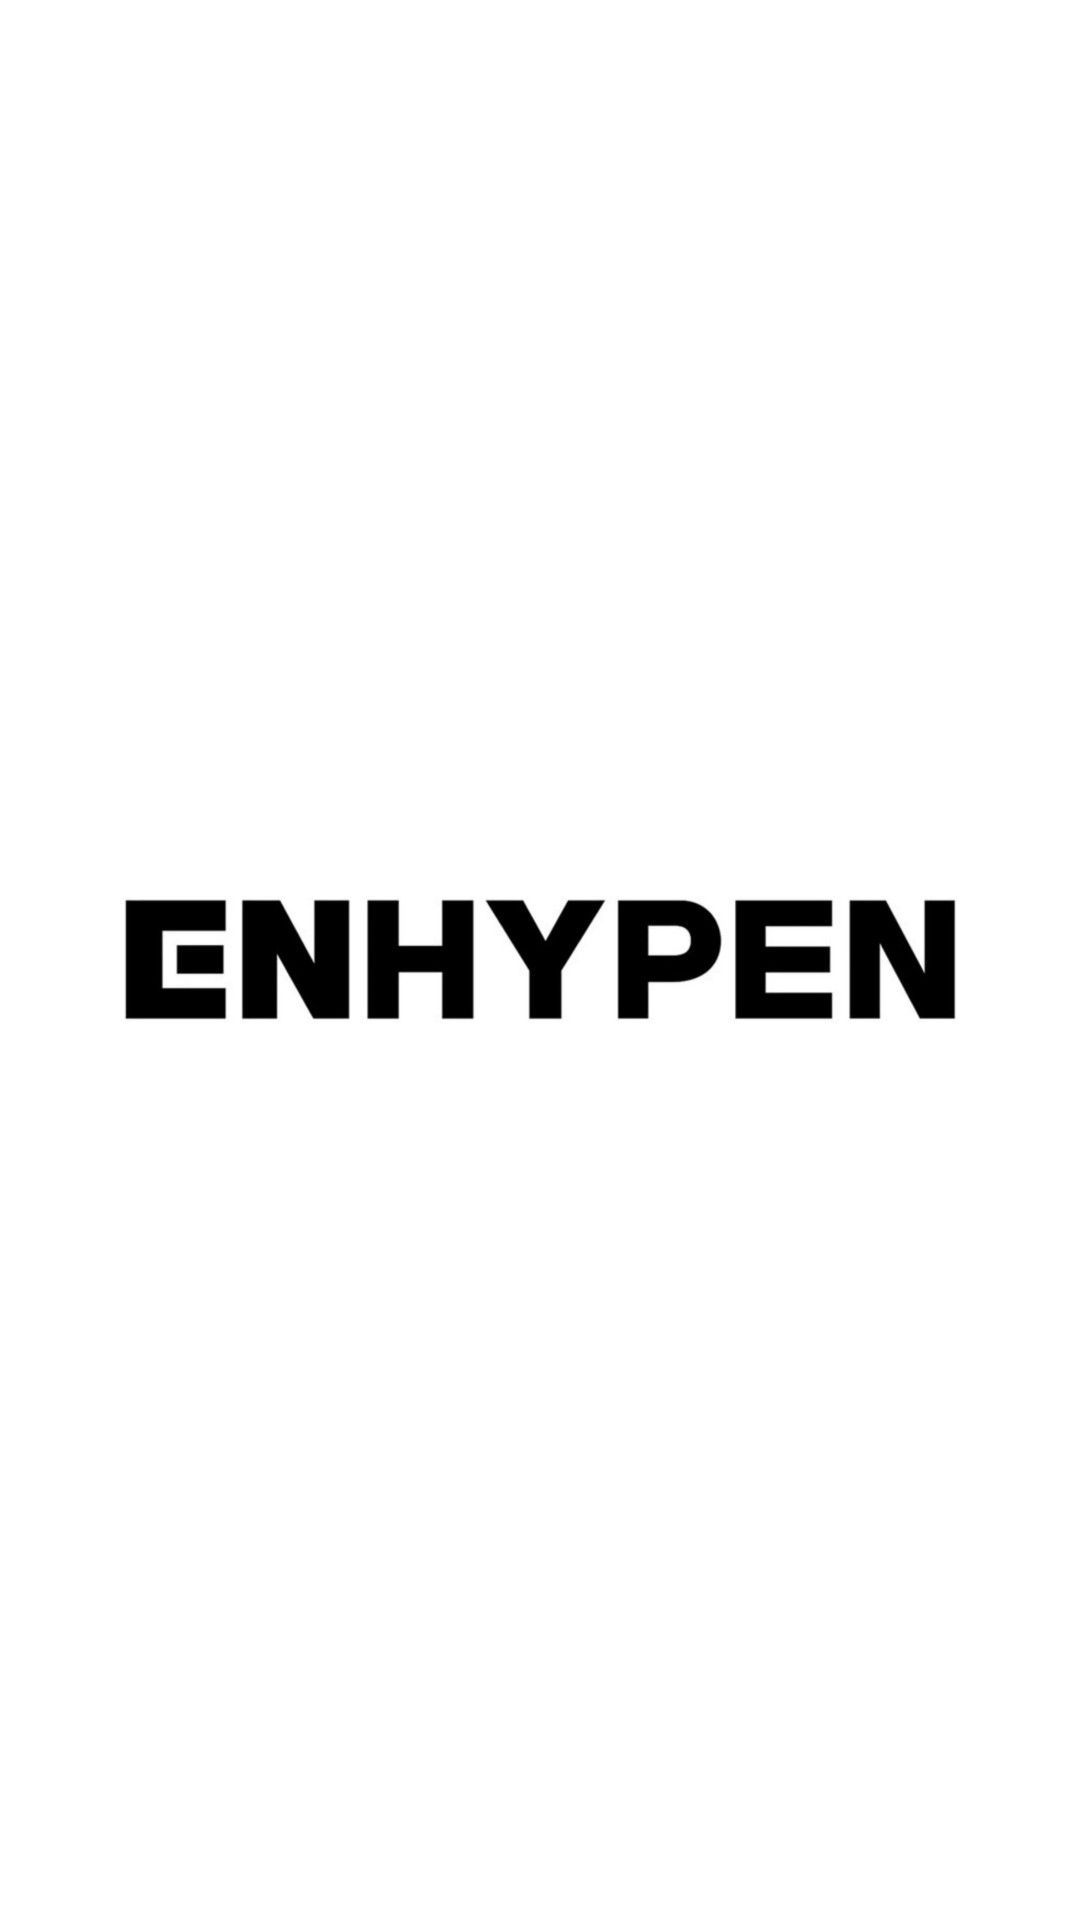 ENHYPEN logo wallpaper. 壁紙, 写真, ロゴ